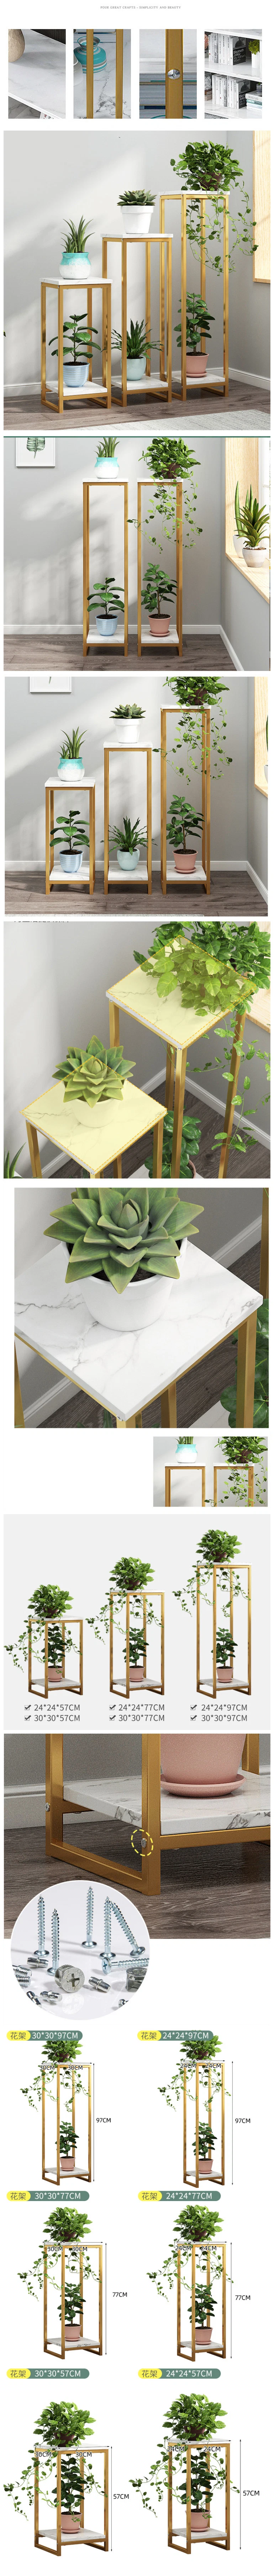 Popular Modern Metal Plants Shelf Living Room Furniture Cabinet Side Decoration Stand